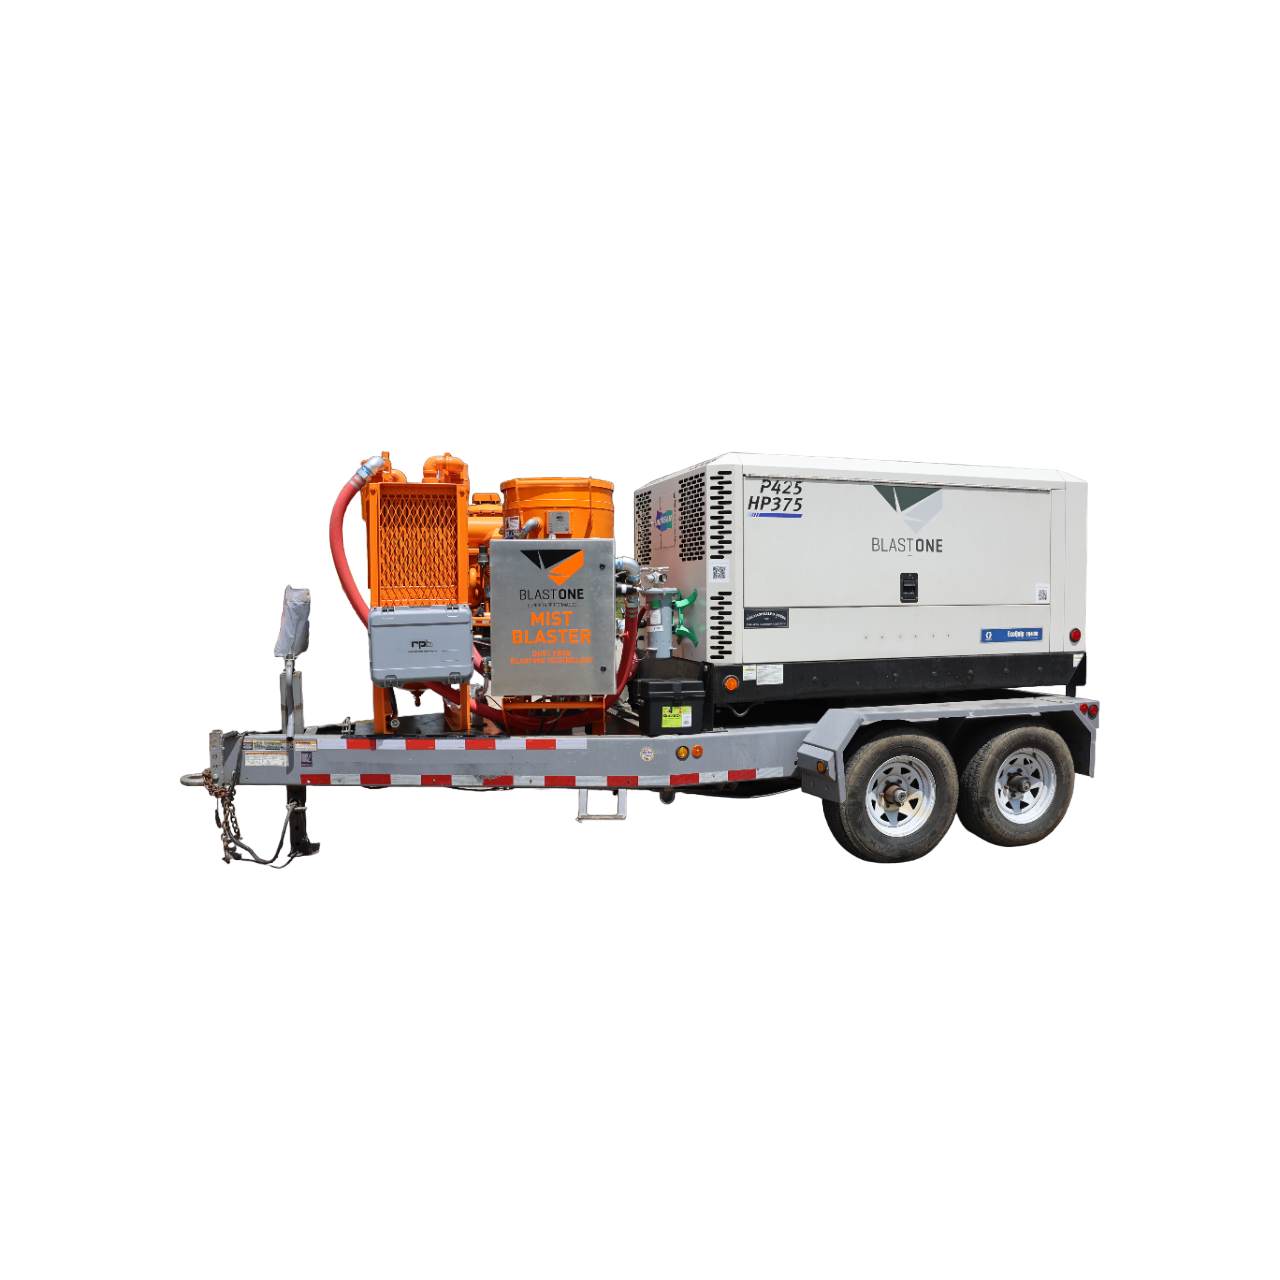 EcoQuip® trailer rig to MistBlaster® technology!